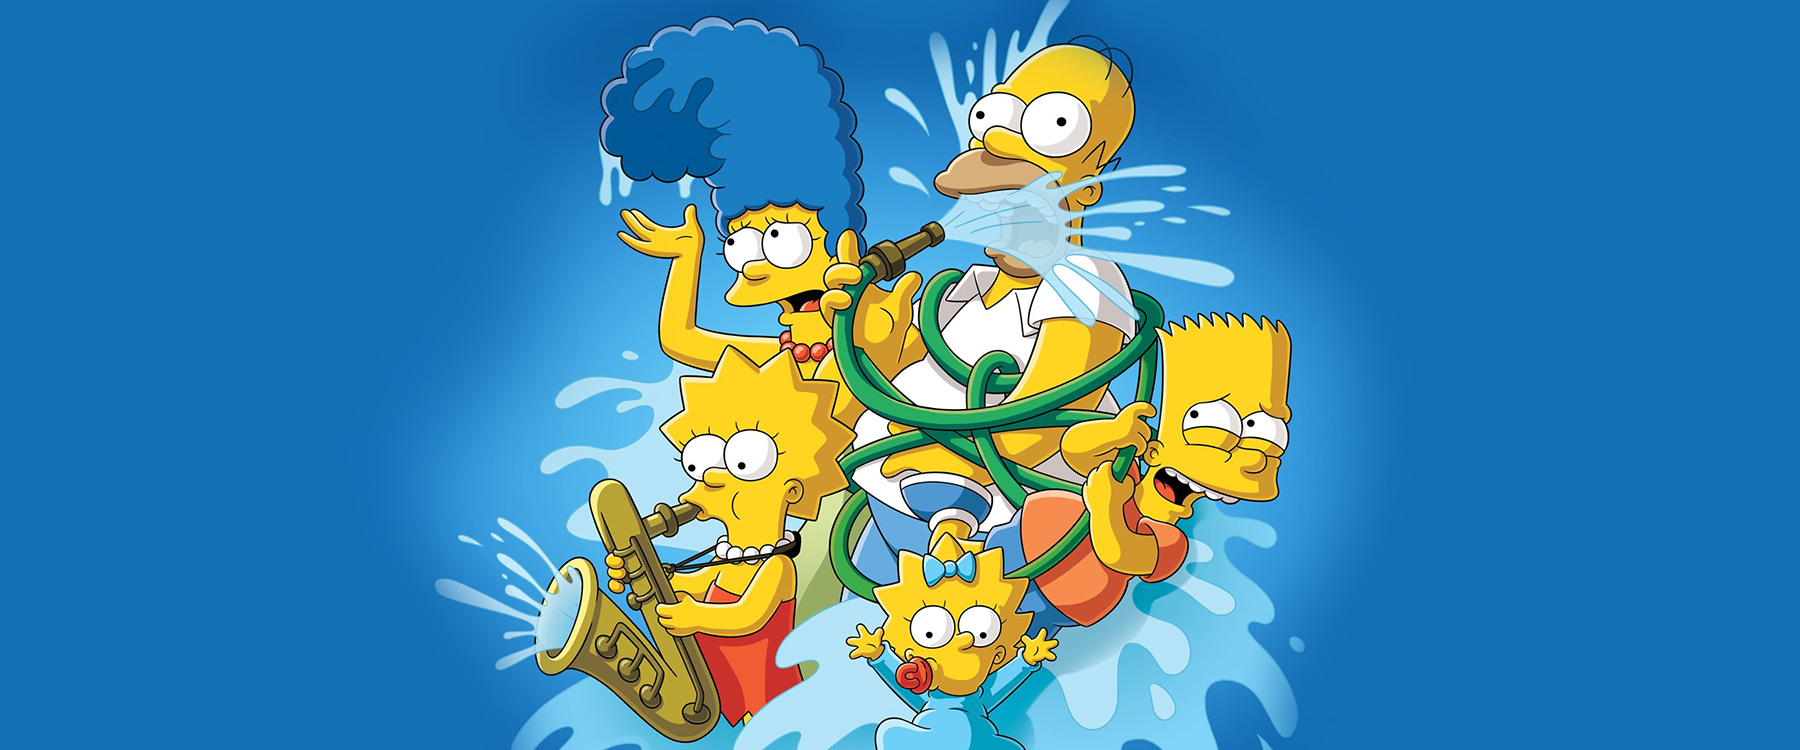 Simpson család (The Simpsons)